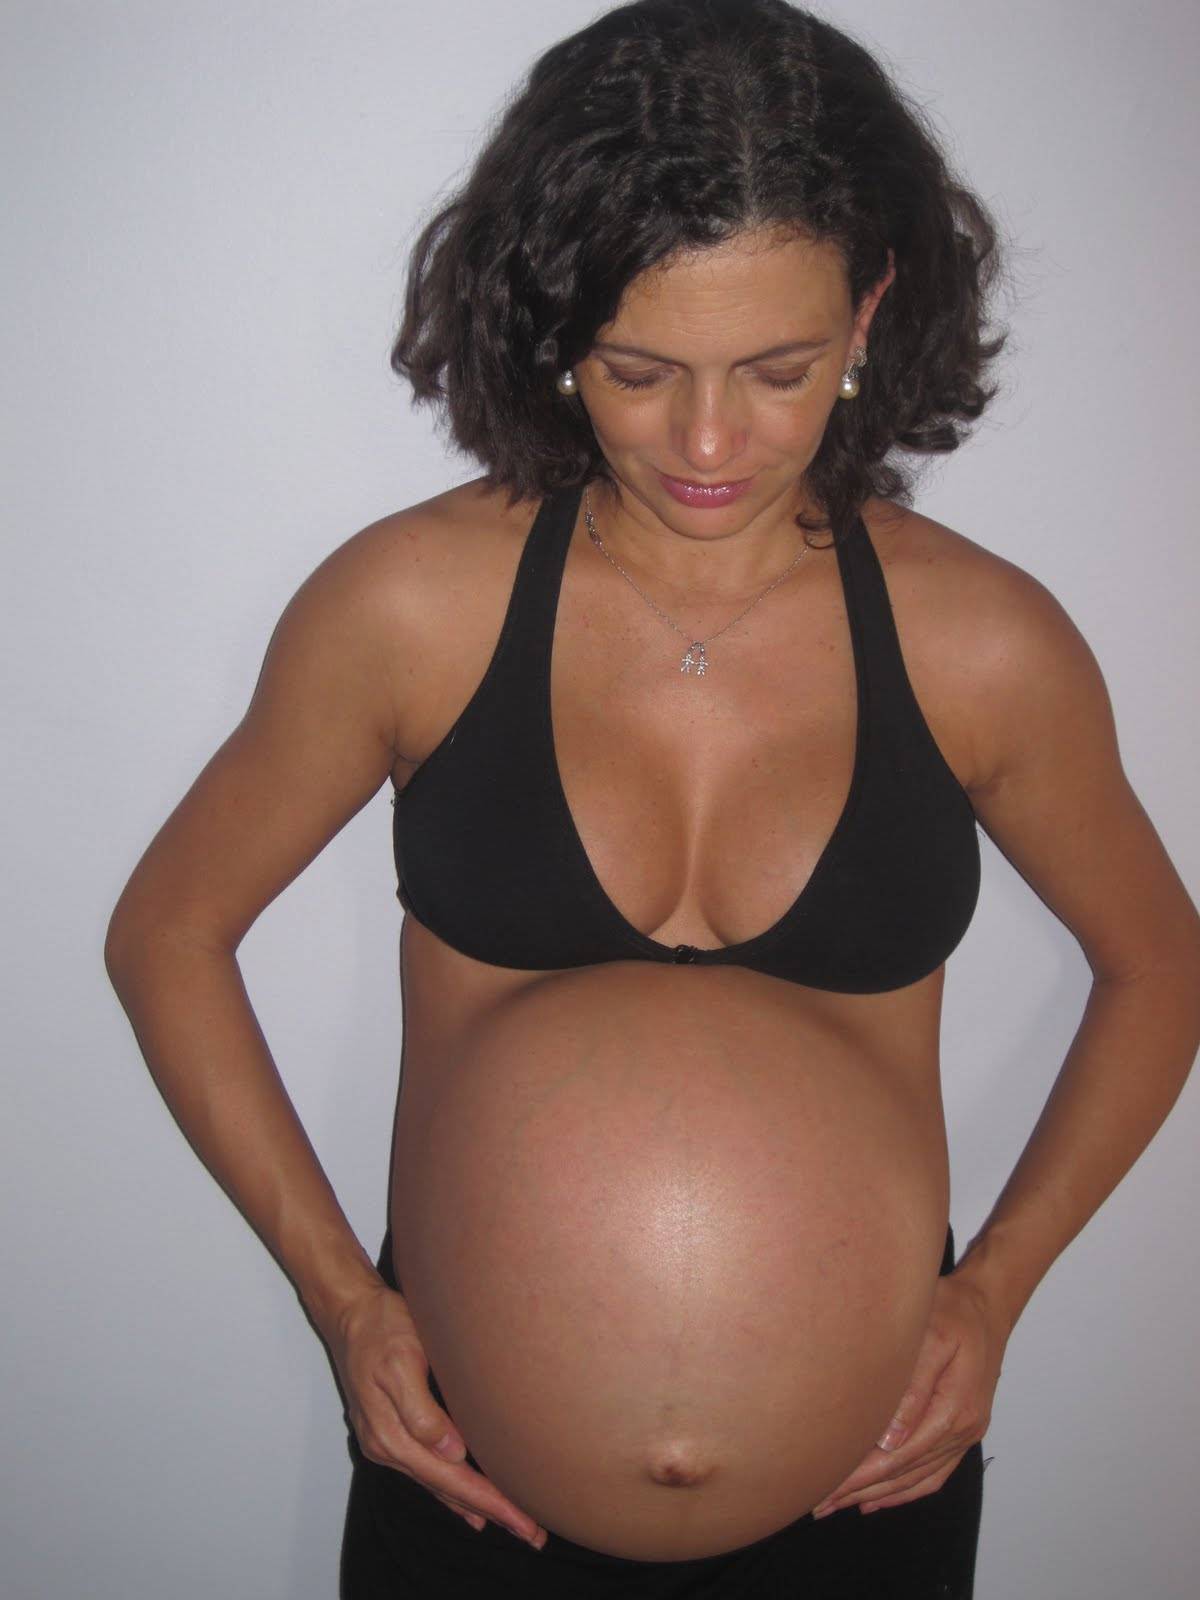 34 неделя беременности – сигналы тревоги